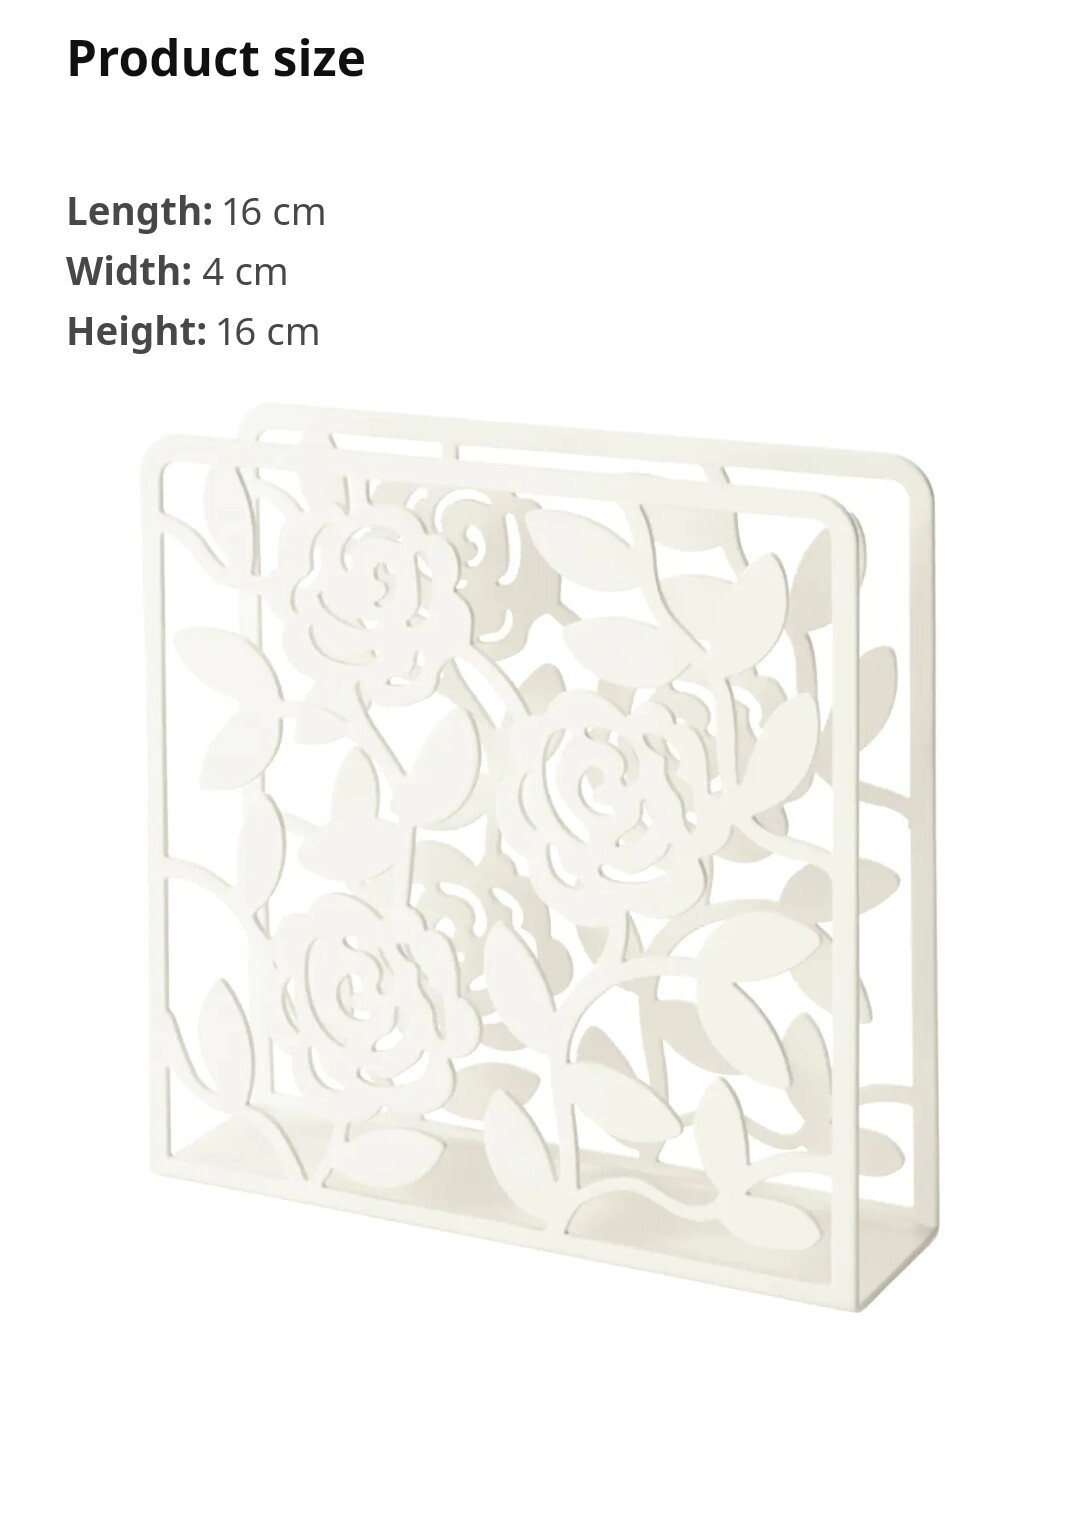  جا دستمال گلدار اصل ایکیا مدل liksidig کد 80209901 رنگ سفید ابعاد 4×16×16 سانتیمتر مناسب انواع دستمال کاغذی سایز 